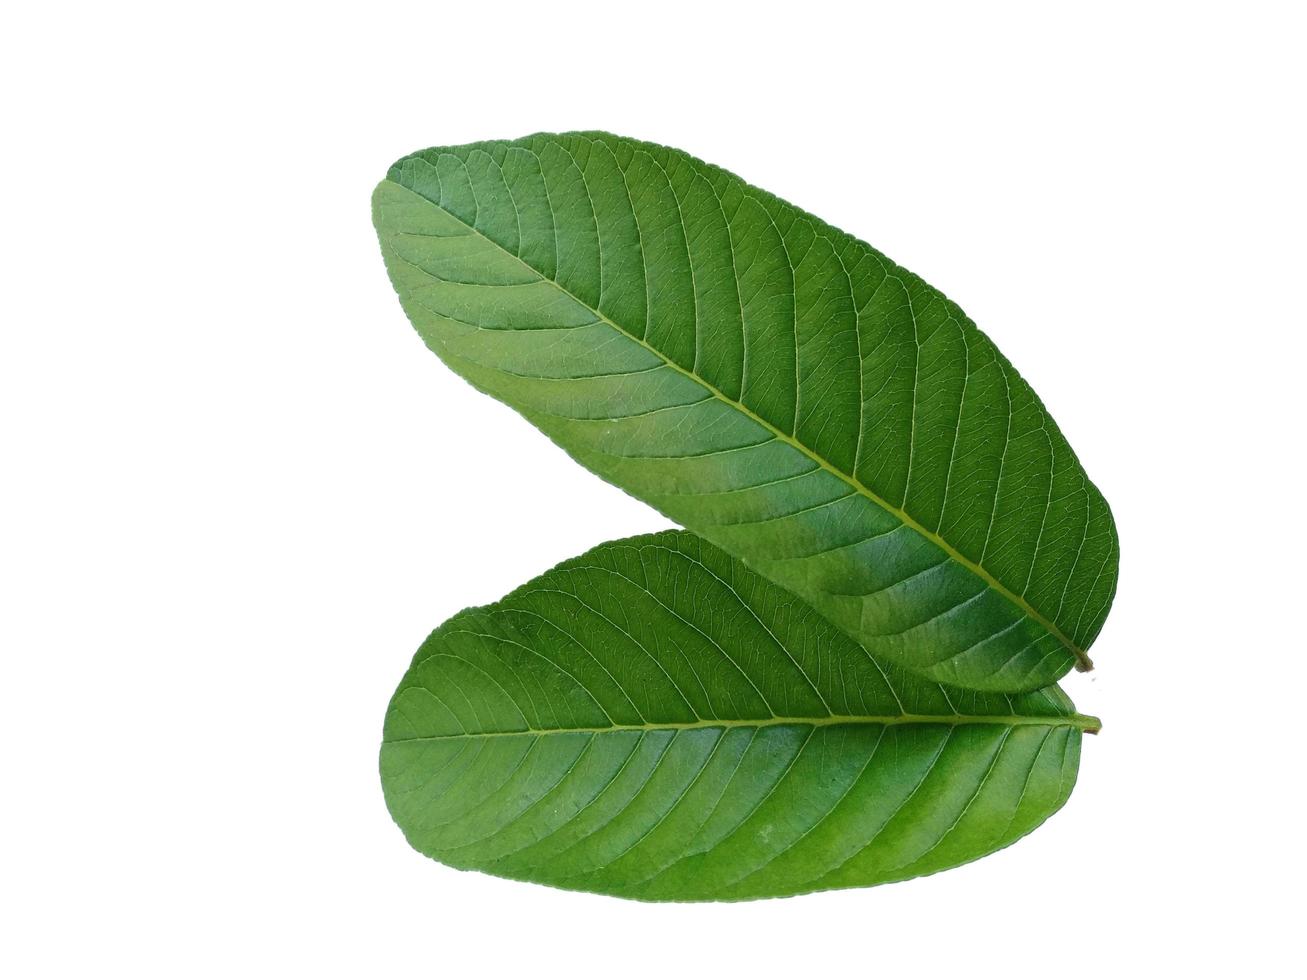 hoja de psidium guajava u hojas de guayaba aisladas sobre fondo blanco foto